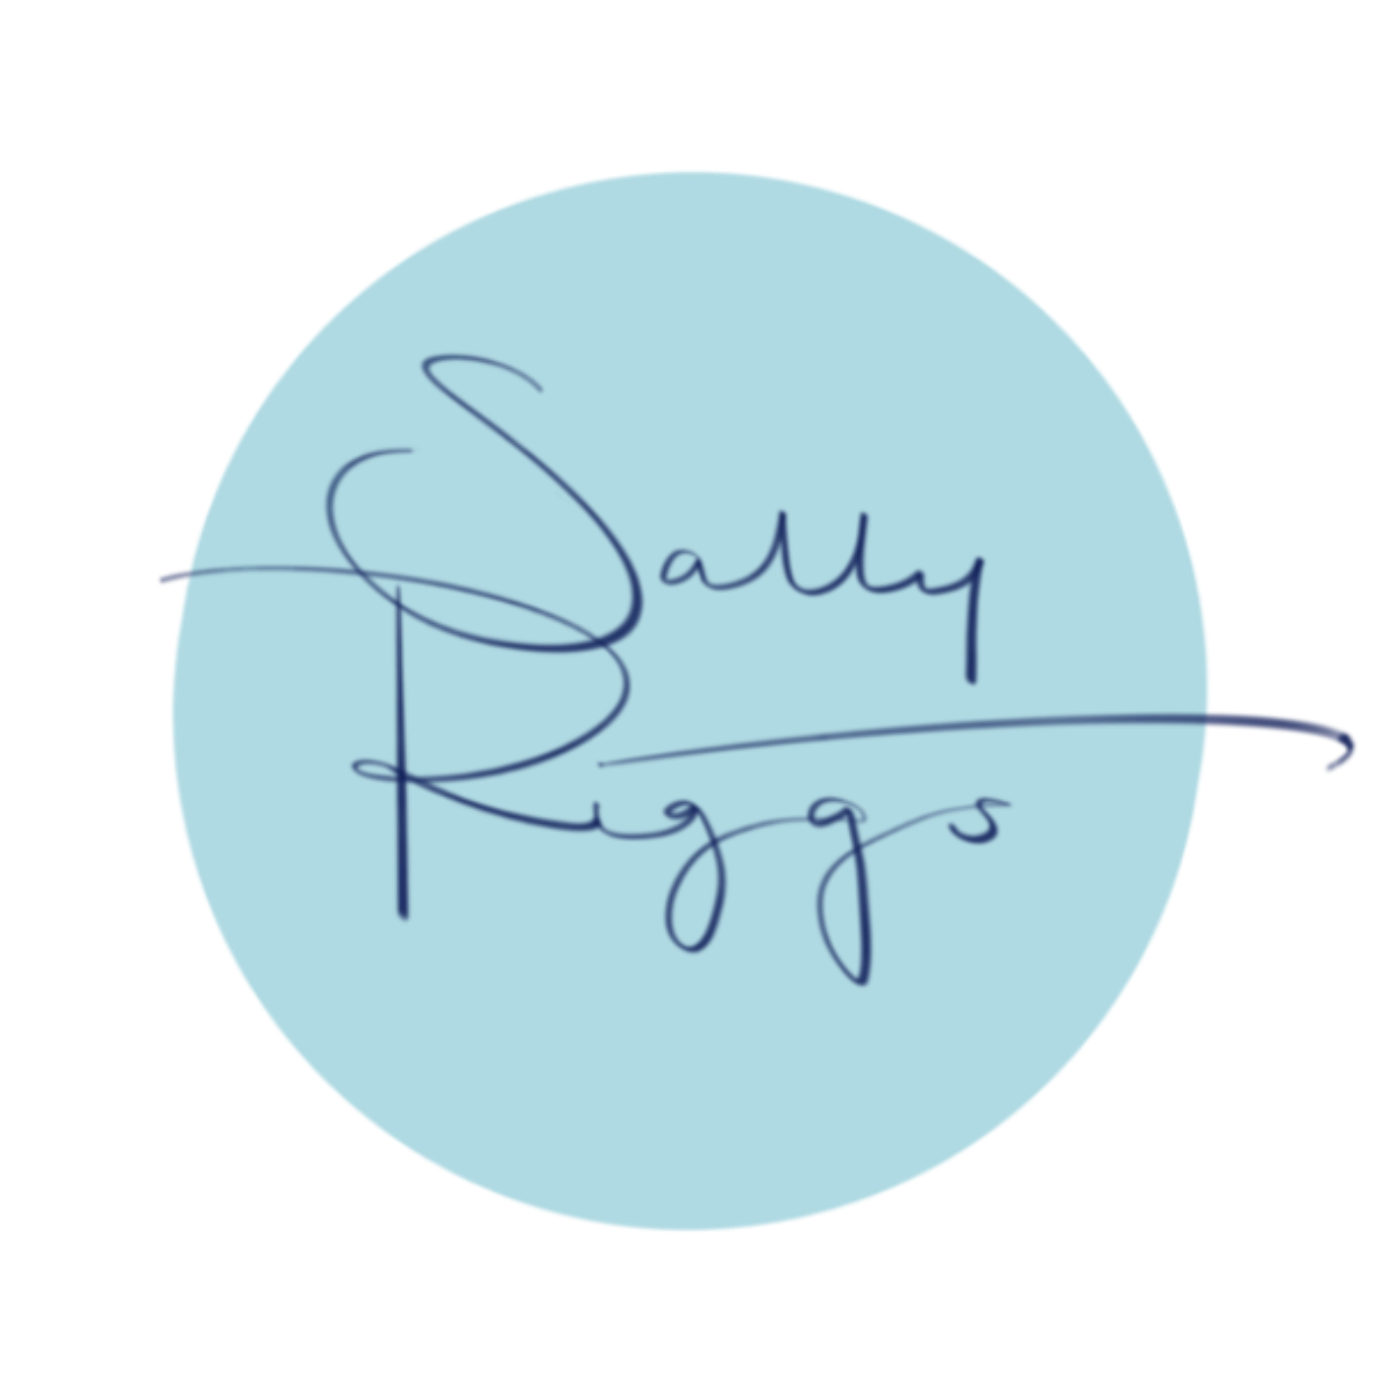 sally riggs logo 3